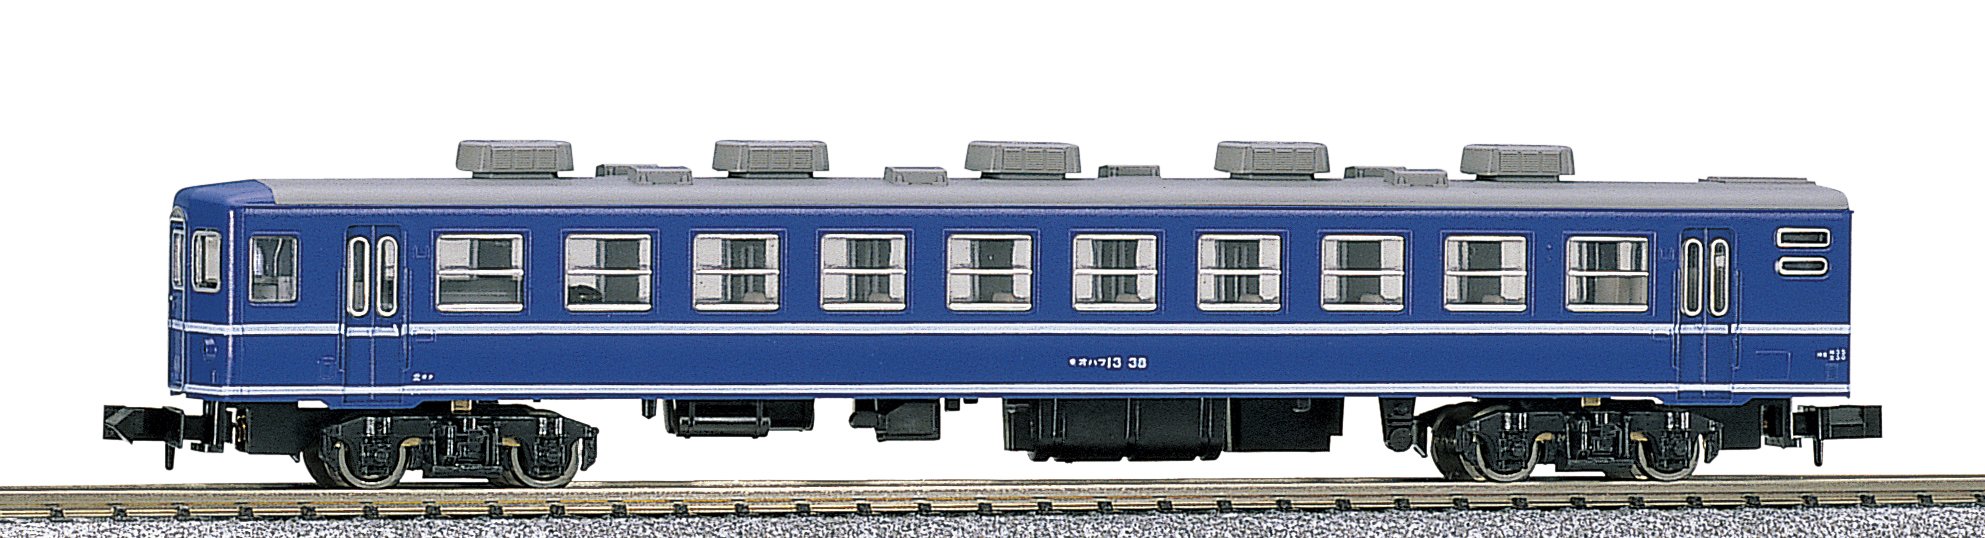 Kato Spur N 5017 Personenwagen – Eisenbahnmodell Ohafu 13